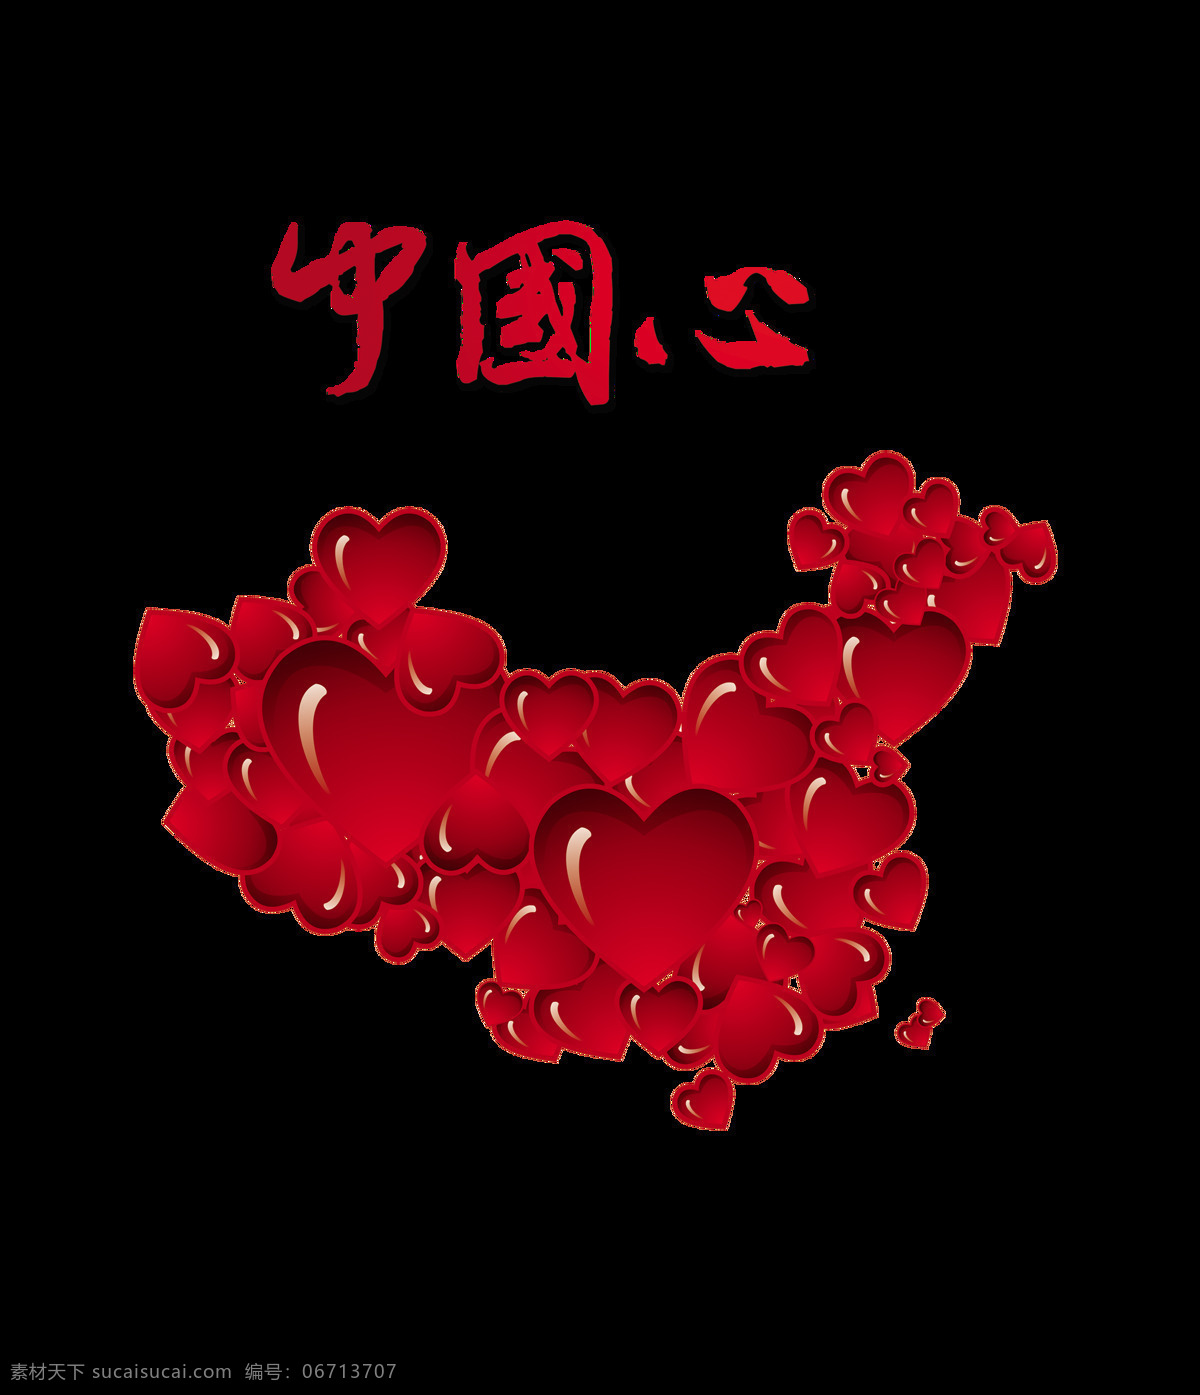 中国 心 爱国心 艺术 字 底图 地图 党建 我的中国心 红心 元素 海报 发展 大国 祖国